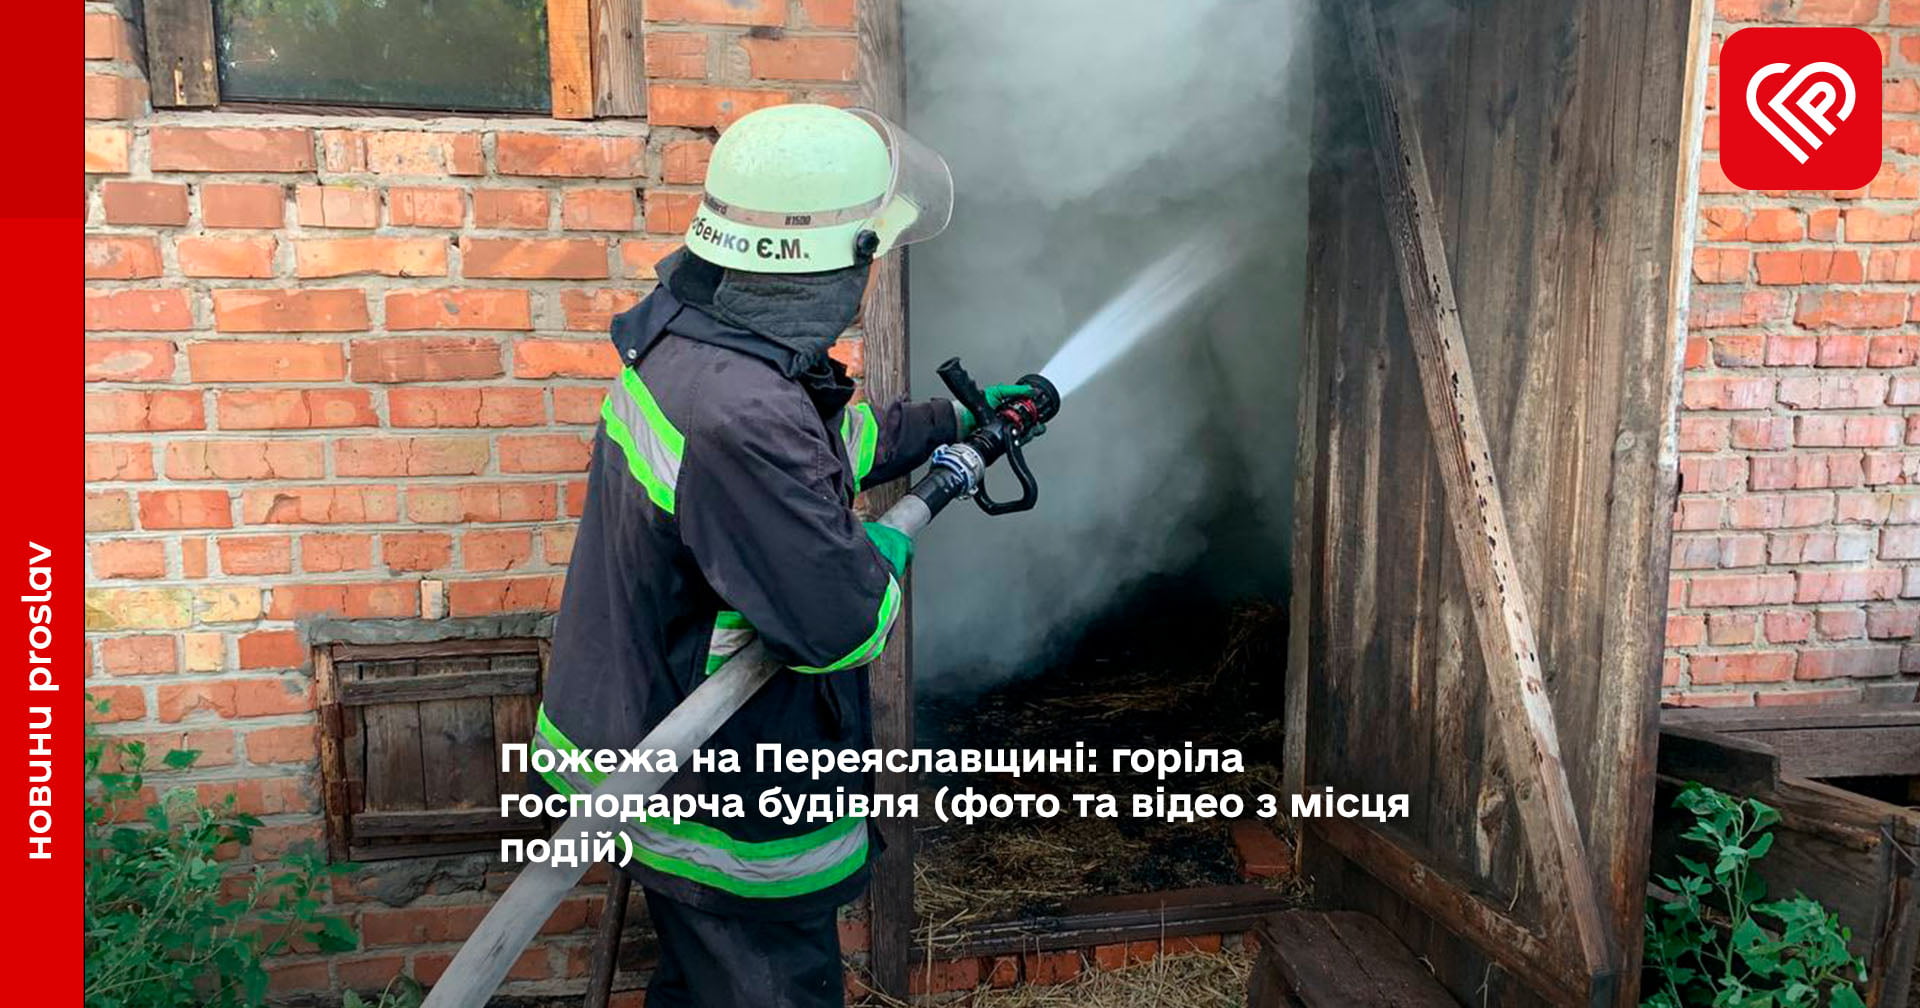 Пожежа на Переяславщині: горіла господарча будівля (фото та відео з місця подій)